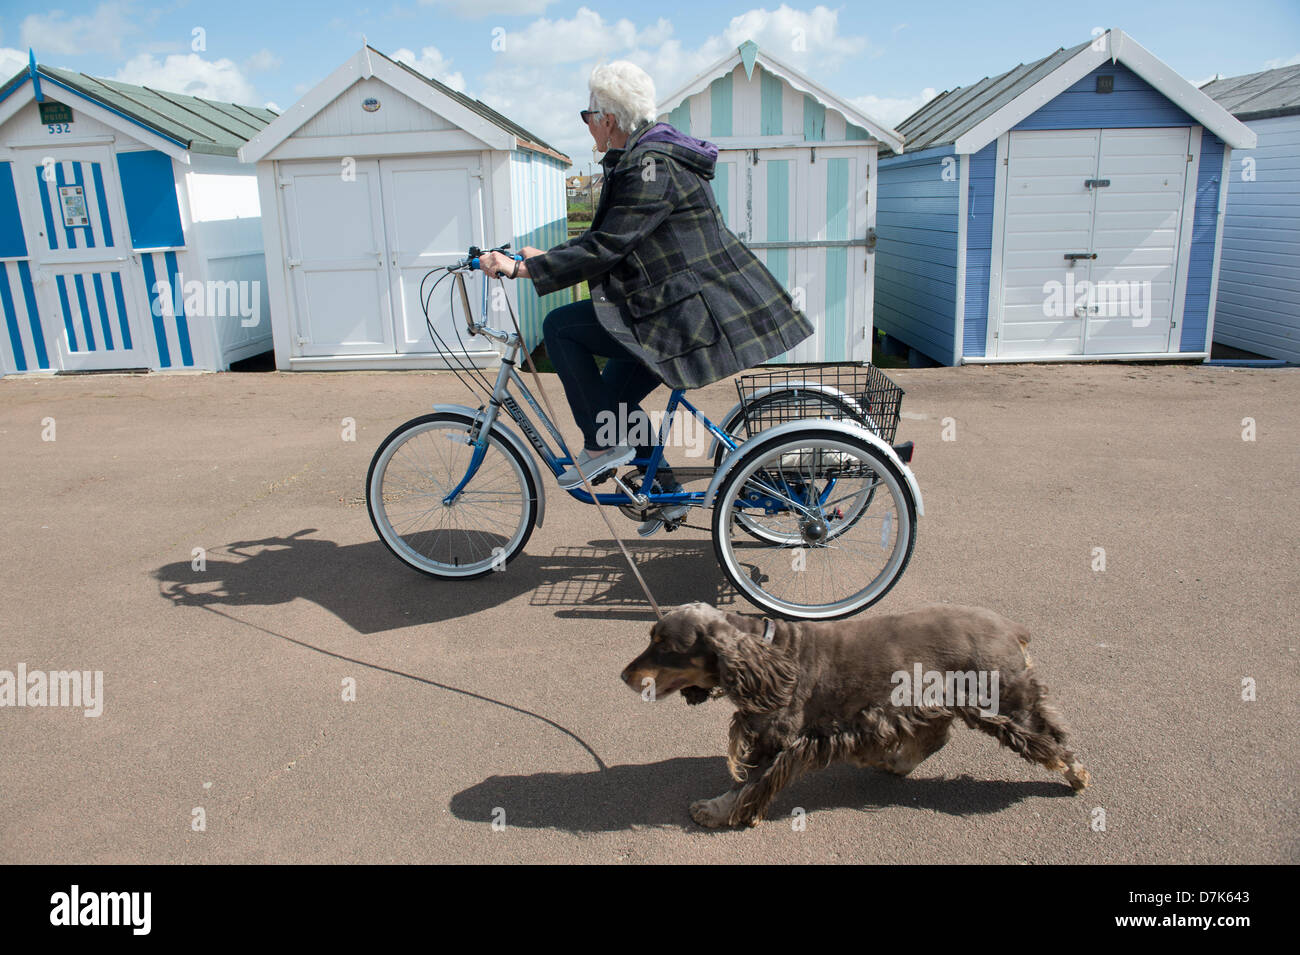 Shoeburyness, Essex. Le 9 mai 2013. Une dame passé cycles cabines de plage peint sur le front sur son tricycle en se promenant son chien. Crédit : La Farandole Stock Photo / Alamy Live News Banque D'Images